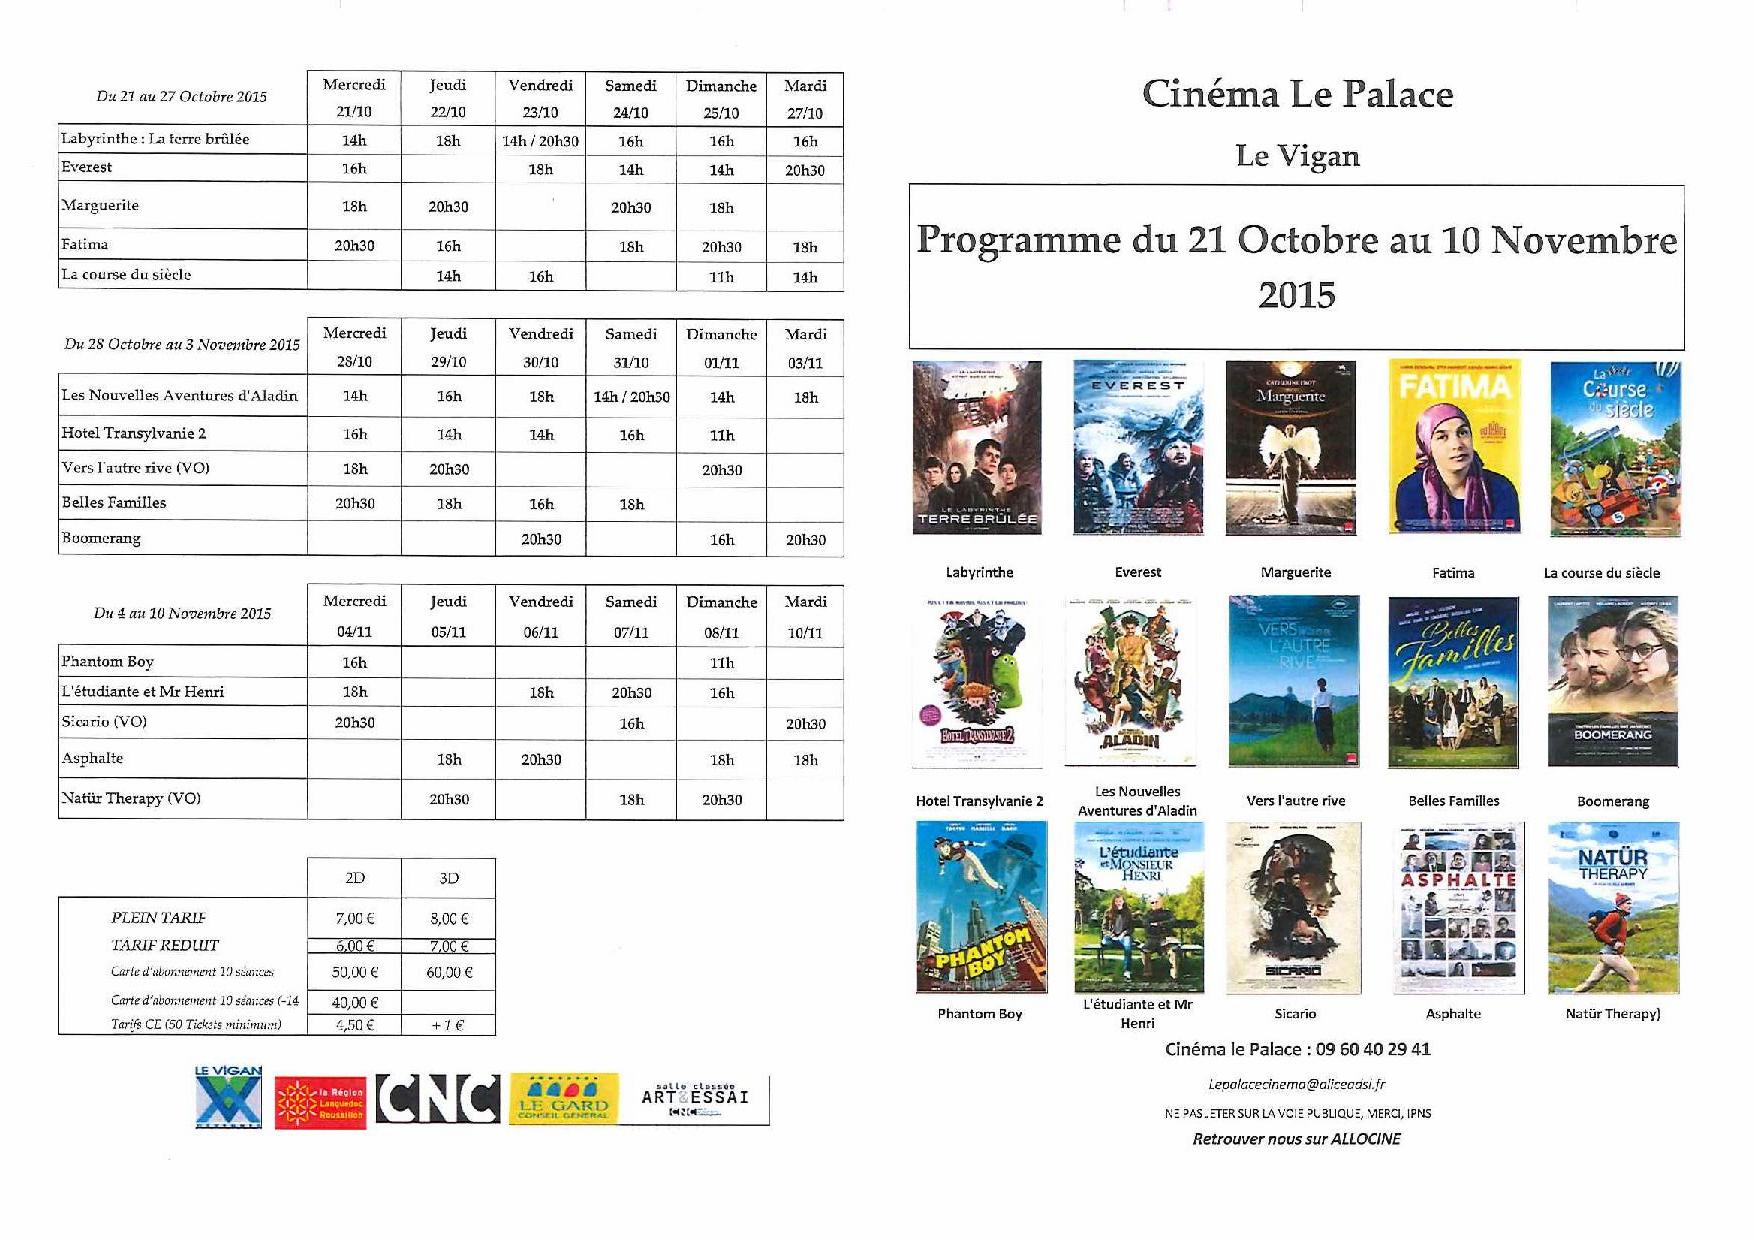 Programme du cinéma Le Palace du 21 Octobre 2015 au 10 Novembre 2015